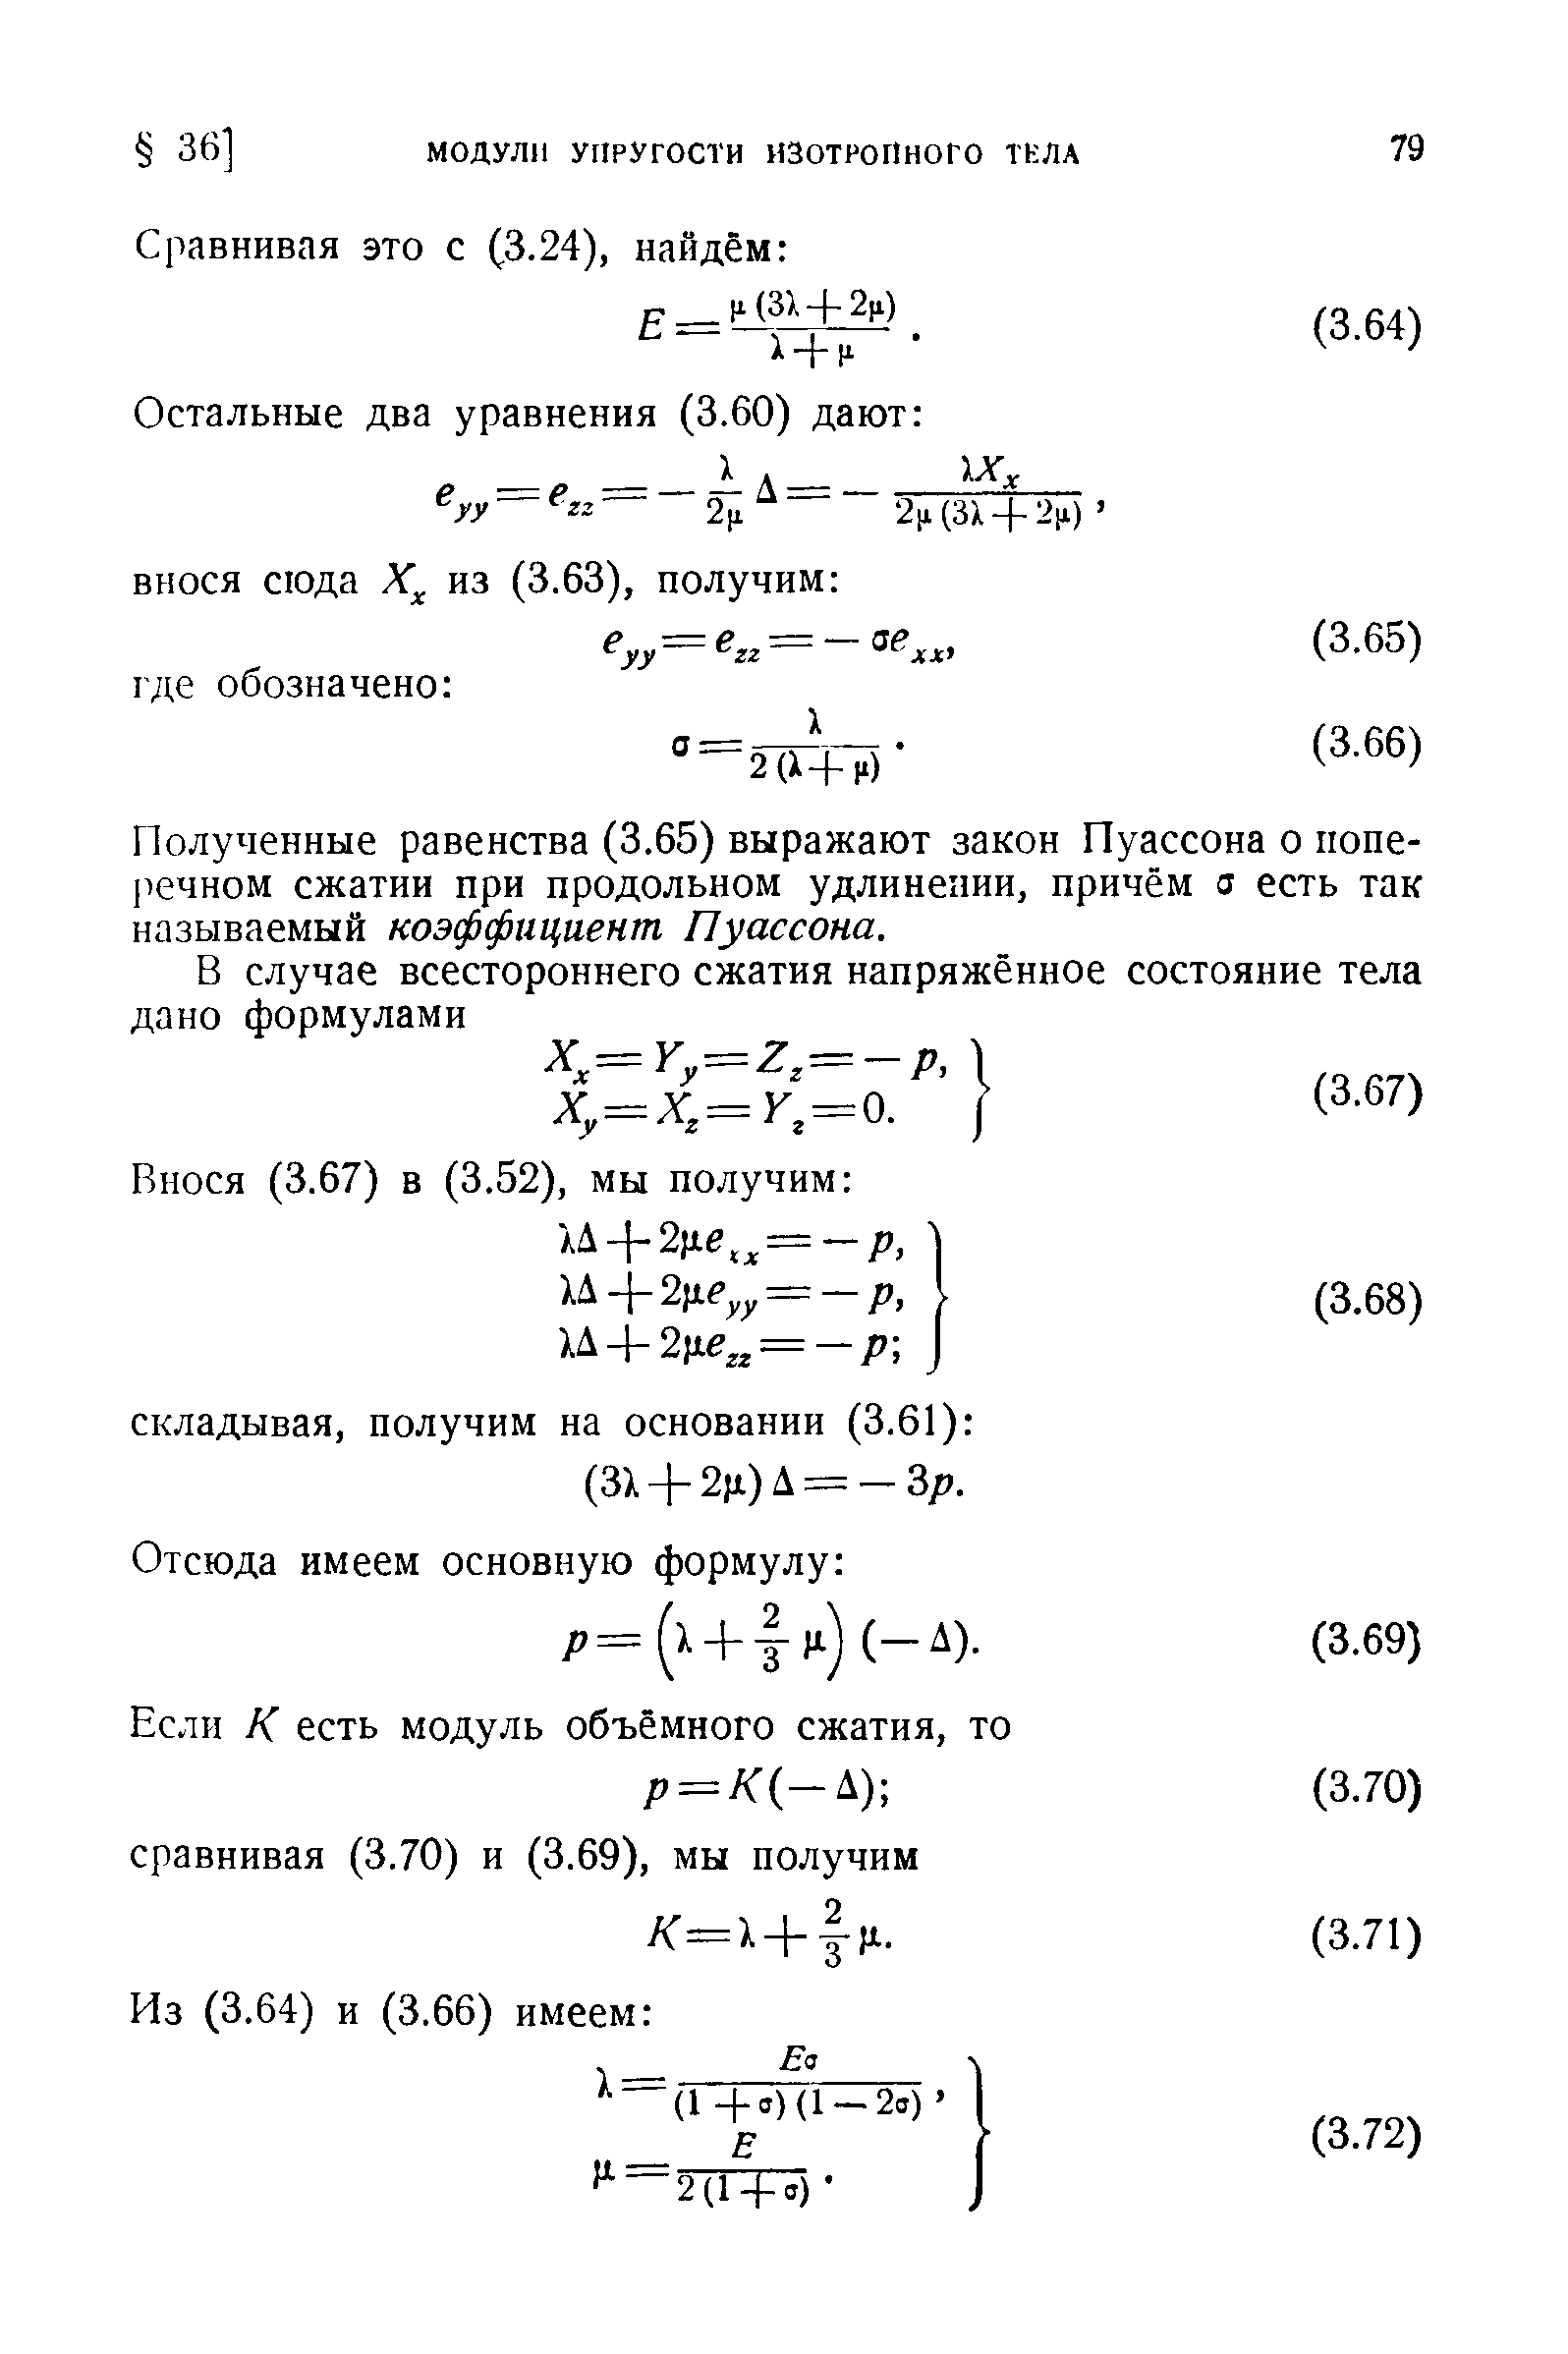 Полученные равенства (3.65) выражают закон Пуассона о попе-речном сжатии при продольном удлинении, причём а есть так называемый коэффициент Пуассона.
